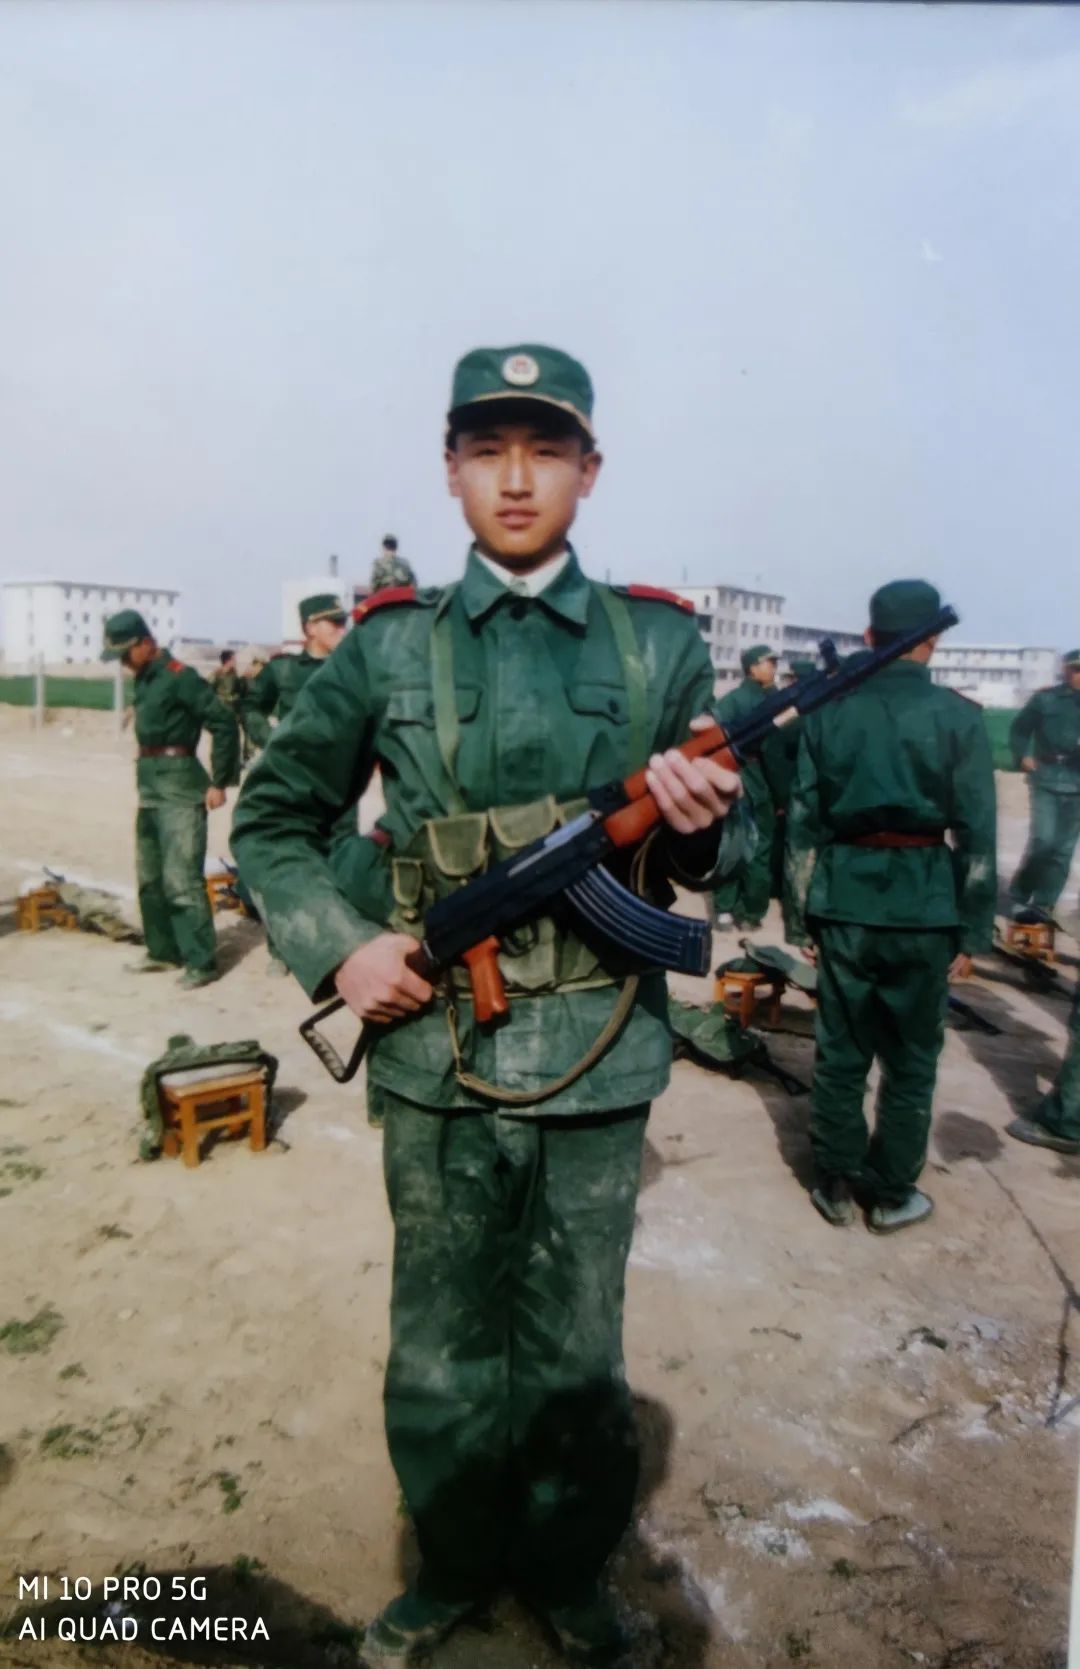 2001年参军入伍,曾服役于武警陕西总队渭南支队,在部队时荣获两次优秀